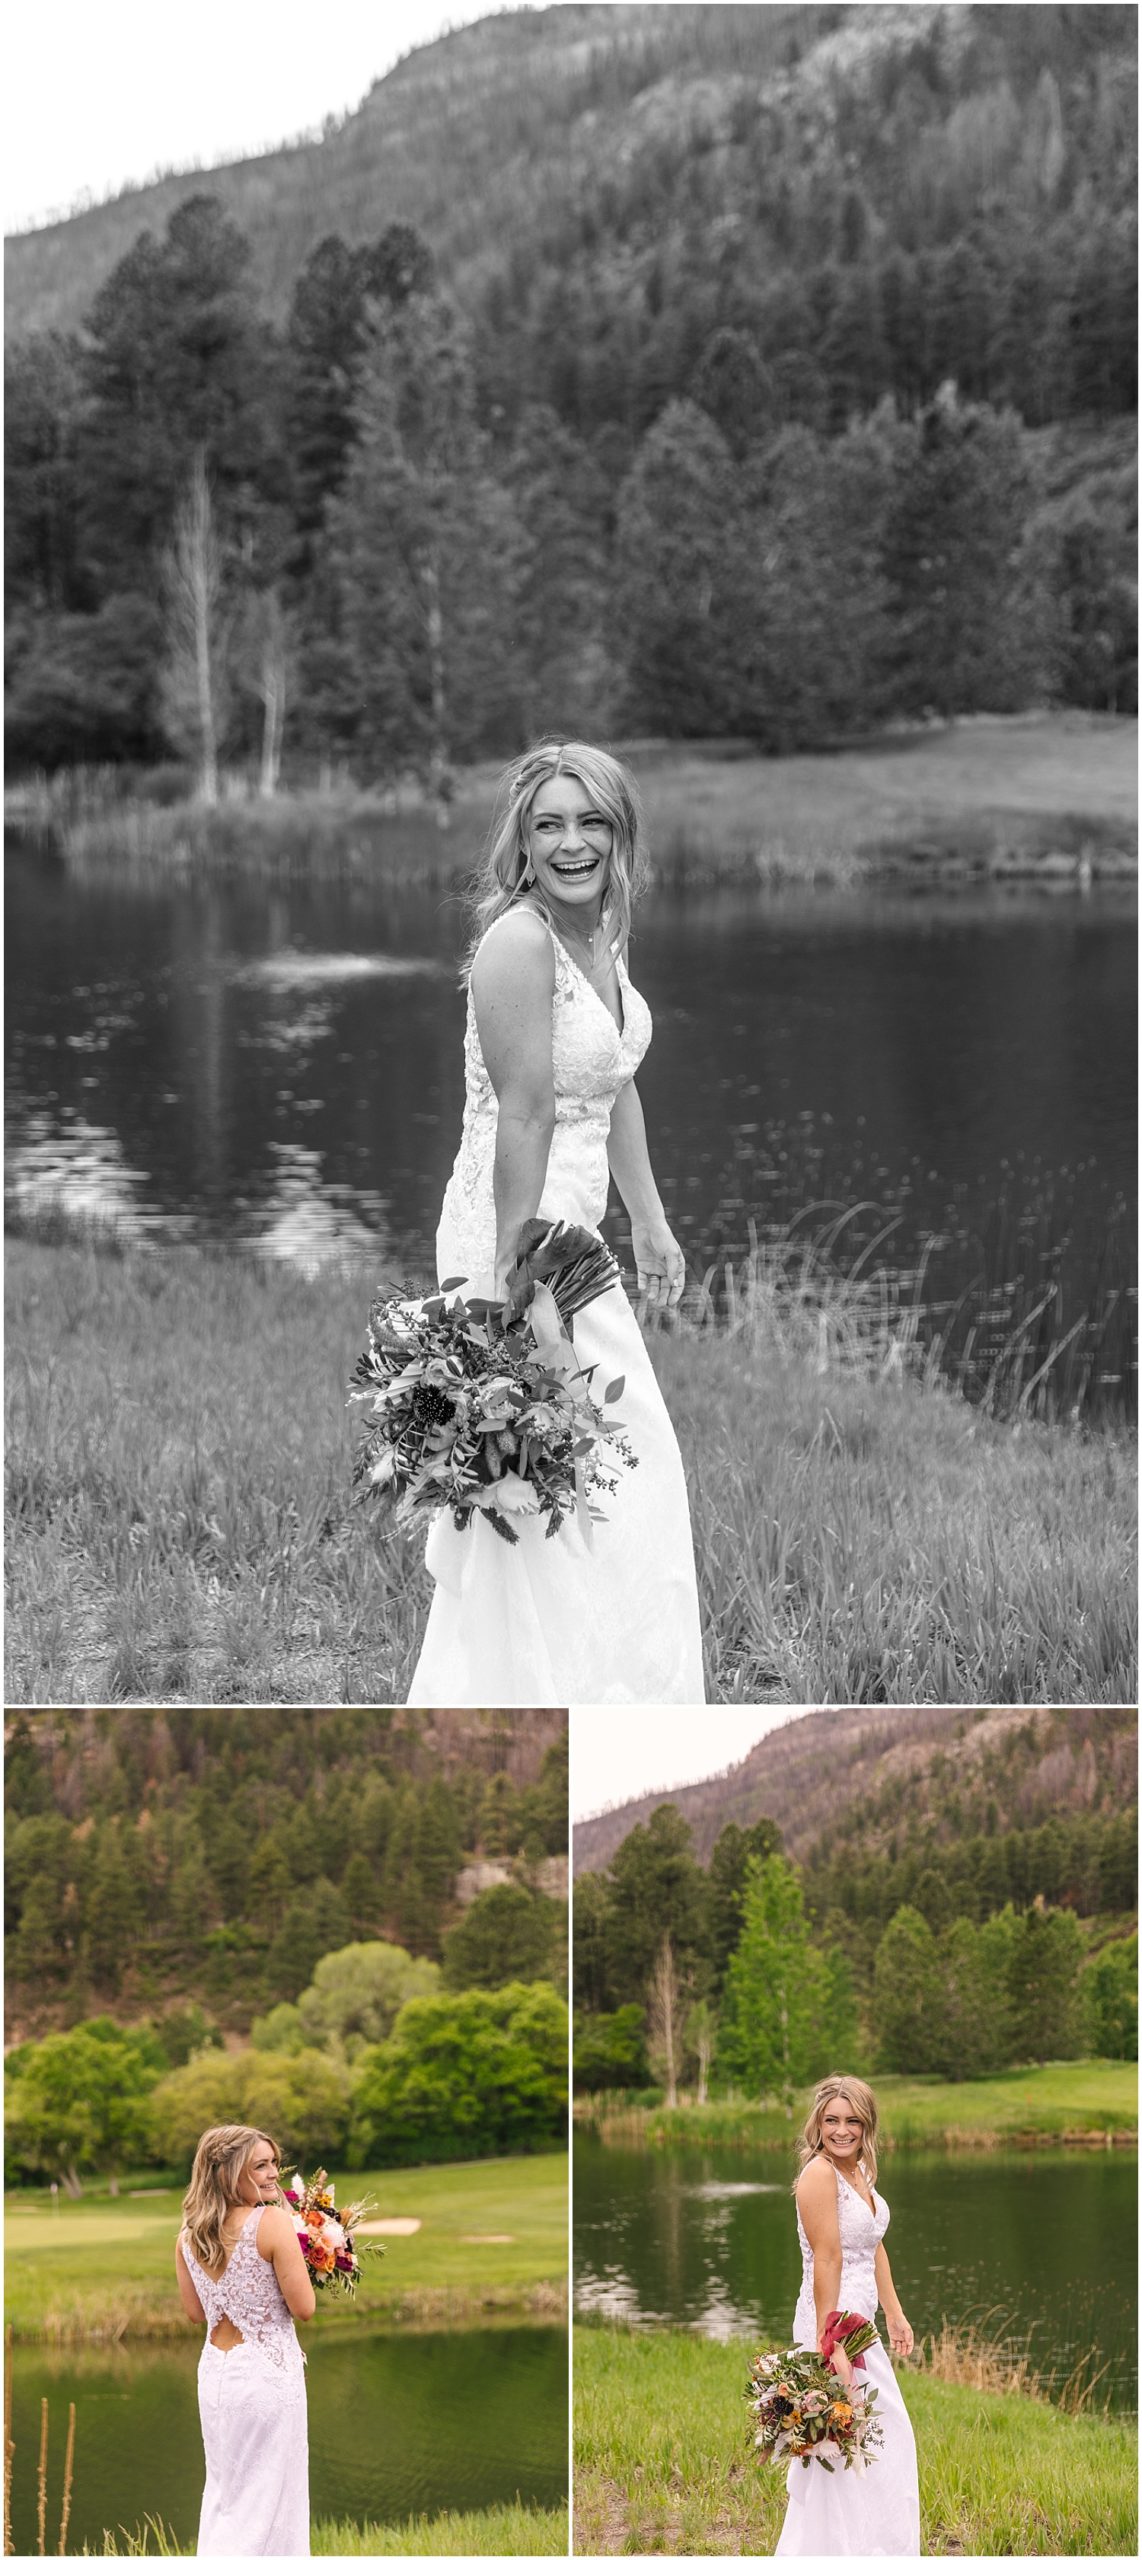 Bridal portraits by the water at Glacier Club in Durango Colorado